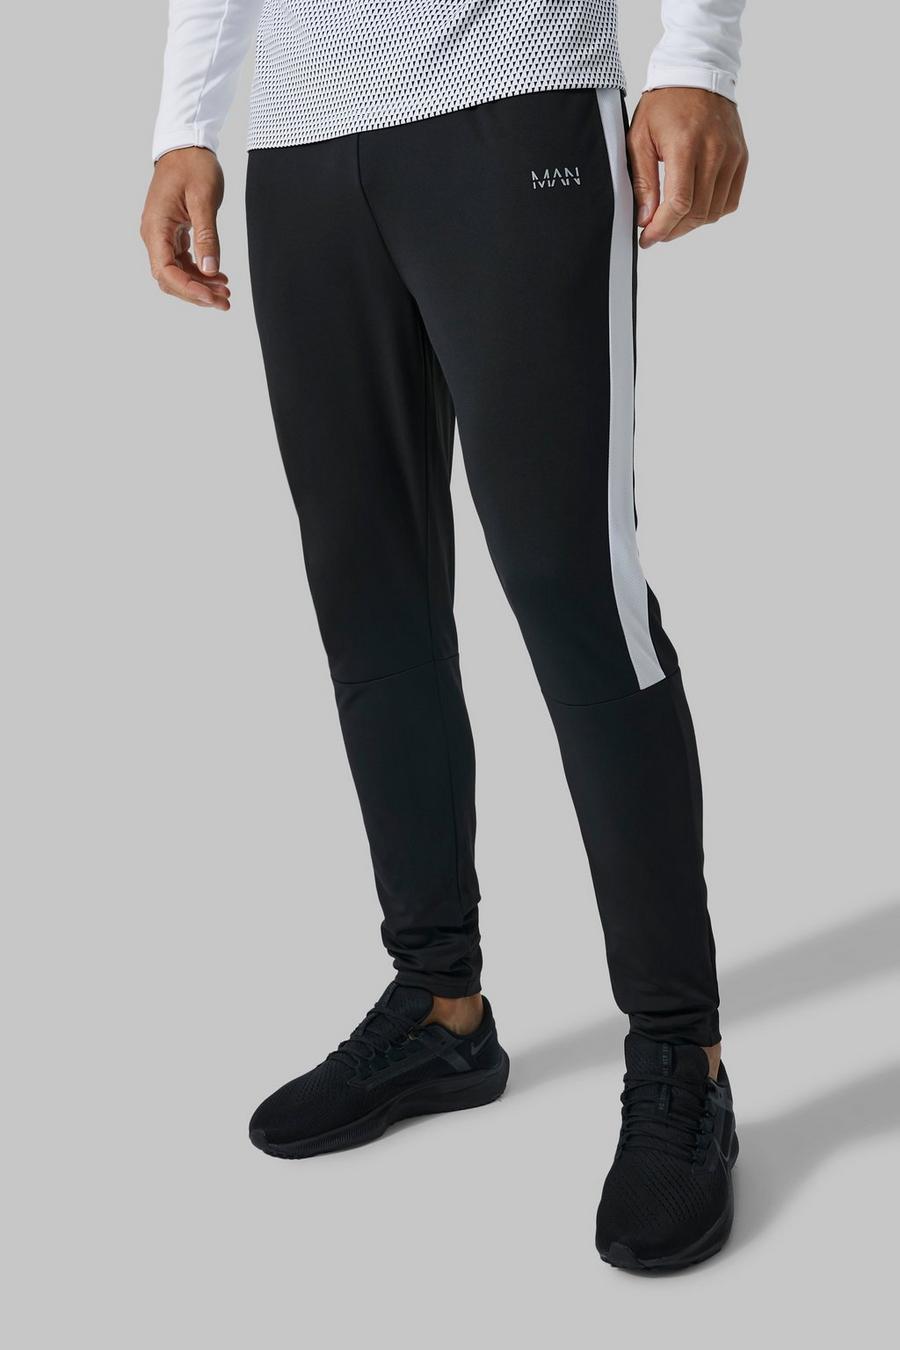 Pantalón deportivo Tall MAN Active resistente de fútbol, Black negro